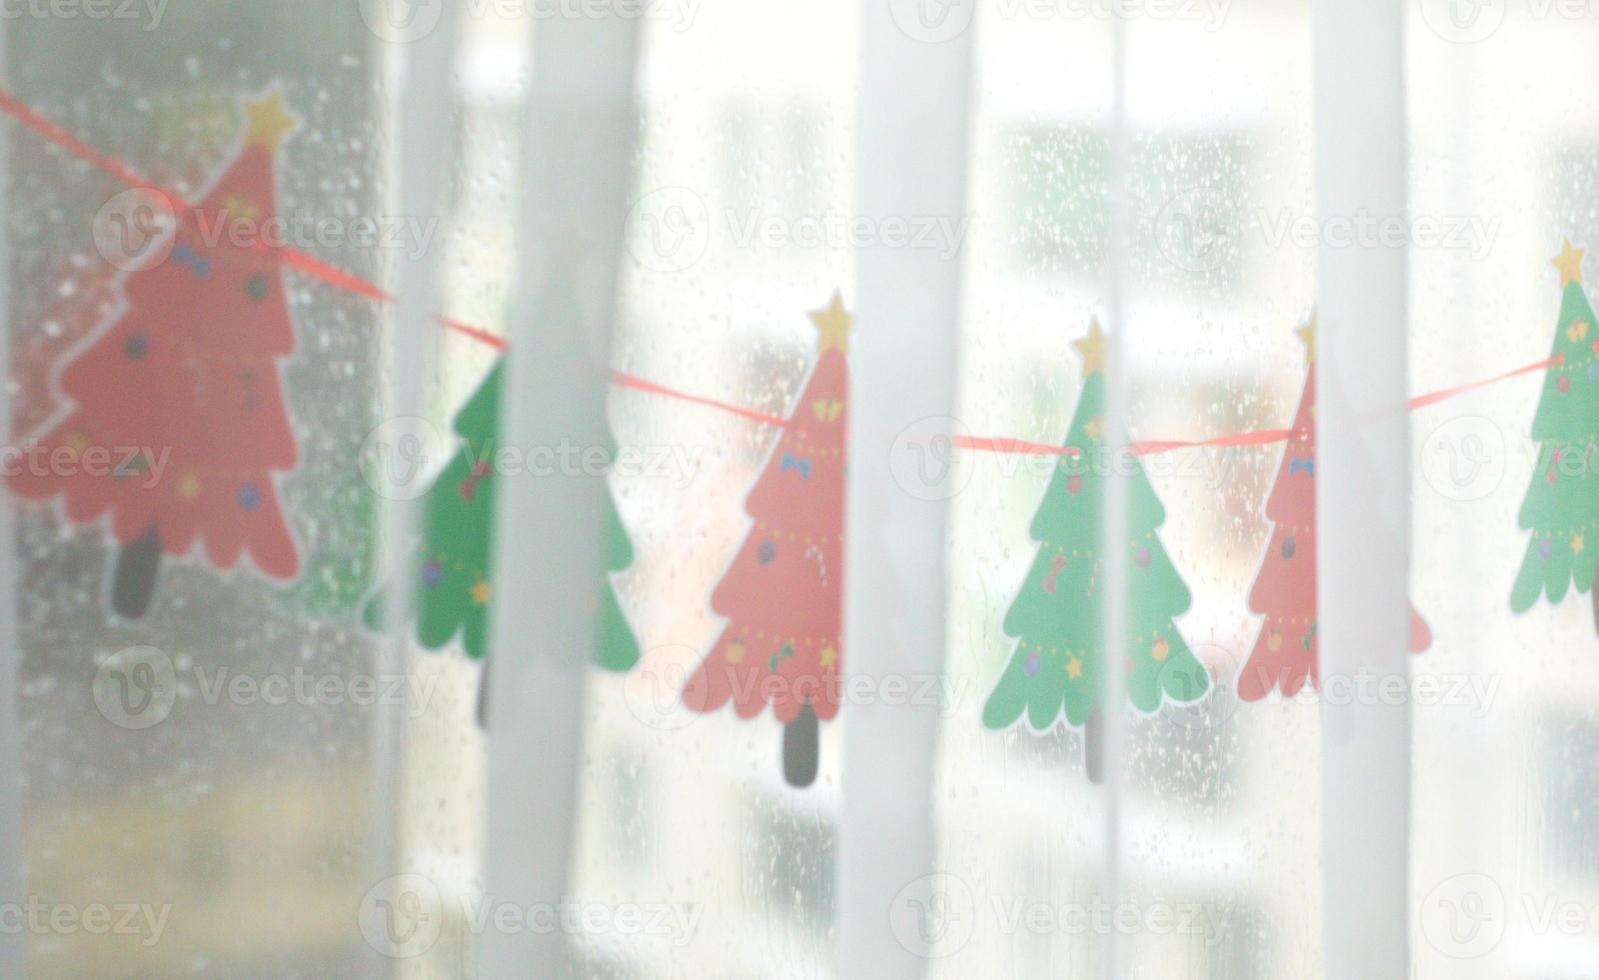 decorato finestra con fatto a mano carta ghirlanda di rosso e verde Natale alberi.festivo umore. Natale concetto, vacanza preparazione.felice nuovo anno.selettivo messa a fuoco foto